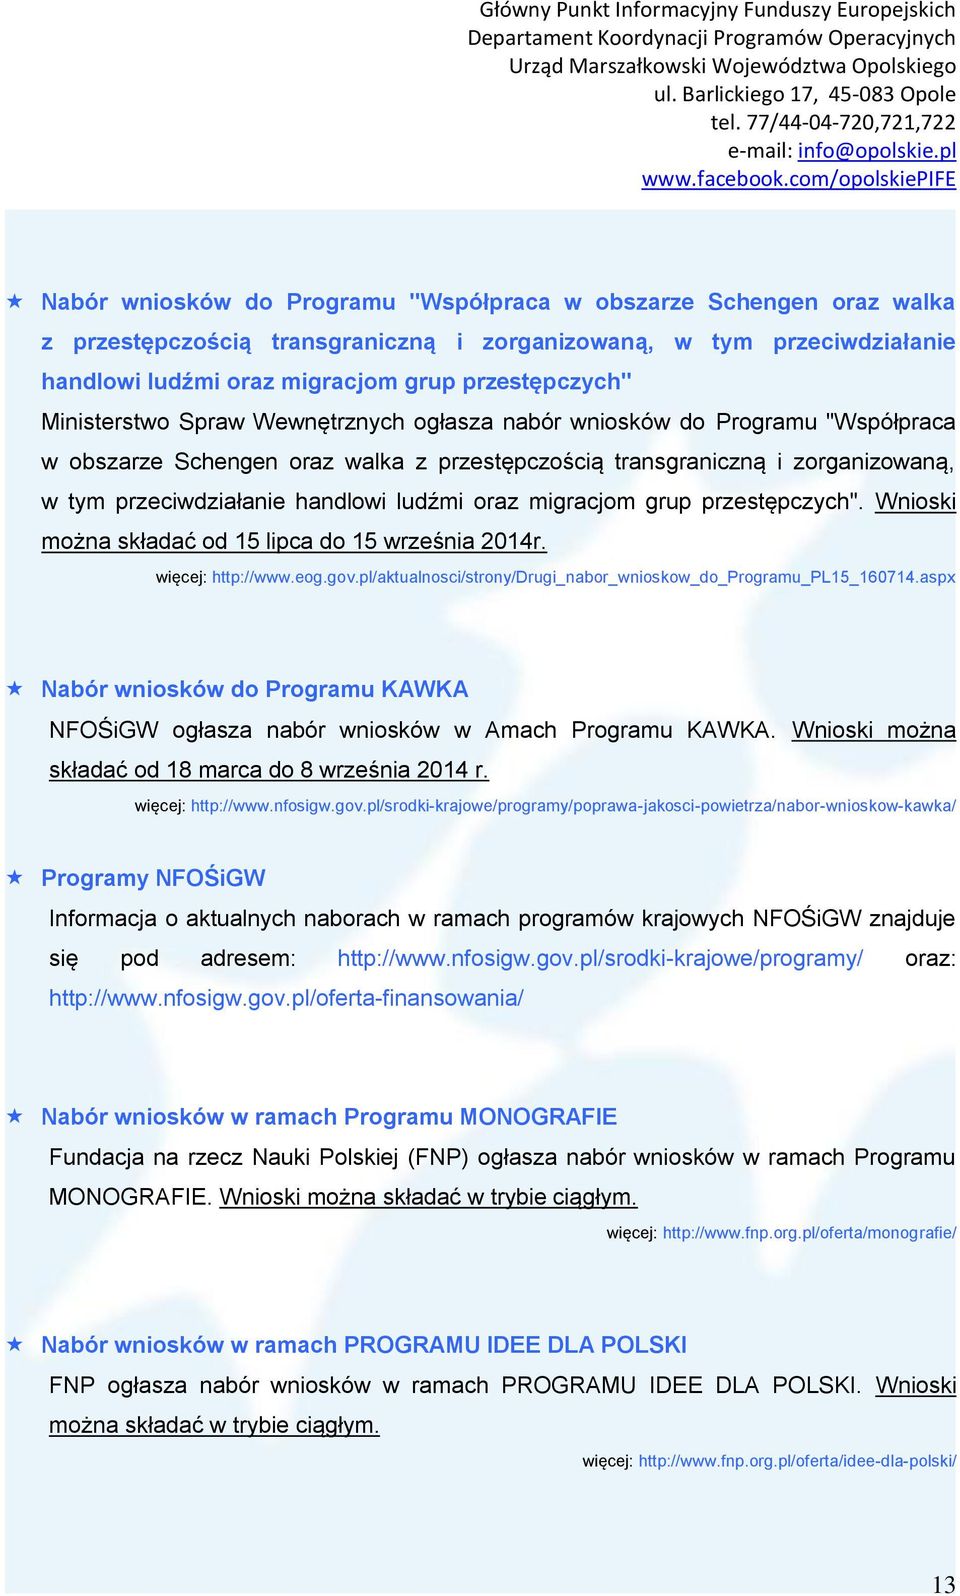 oraz migracjom grup przestępczych". Wnioski można składać od 15 lipca do 15 września 2014r. więcej: http://www.eog.gov.pl/aktualnosci/strony/drugi_nabor_wnioskow_do_programu_pl15_160714.